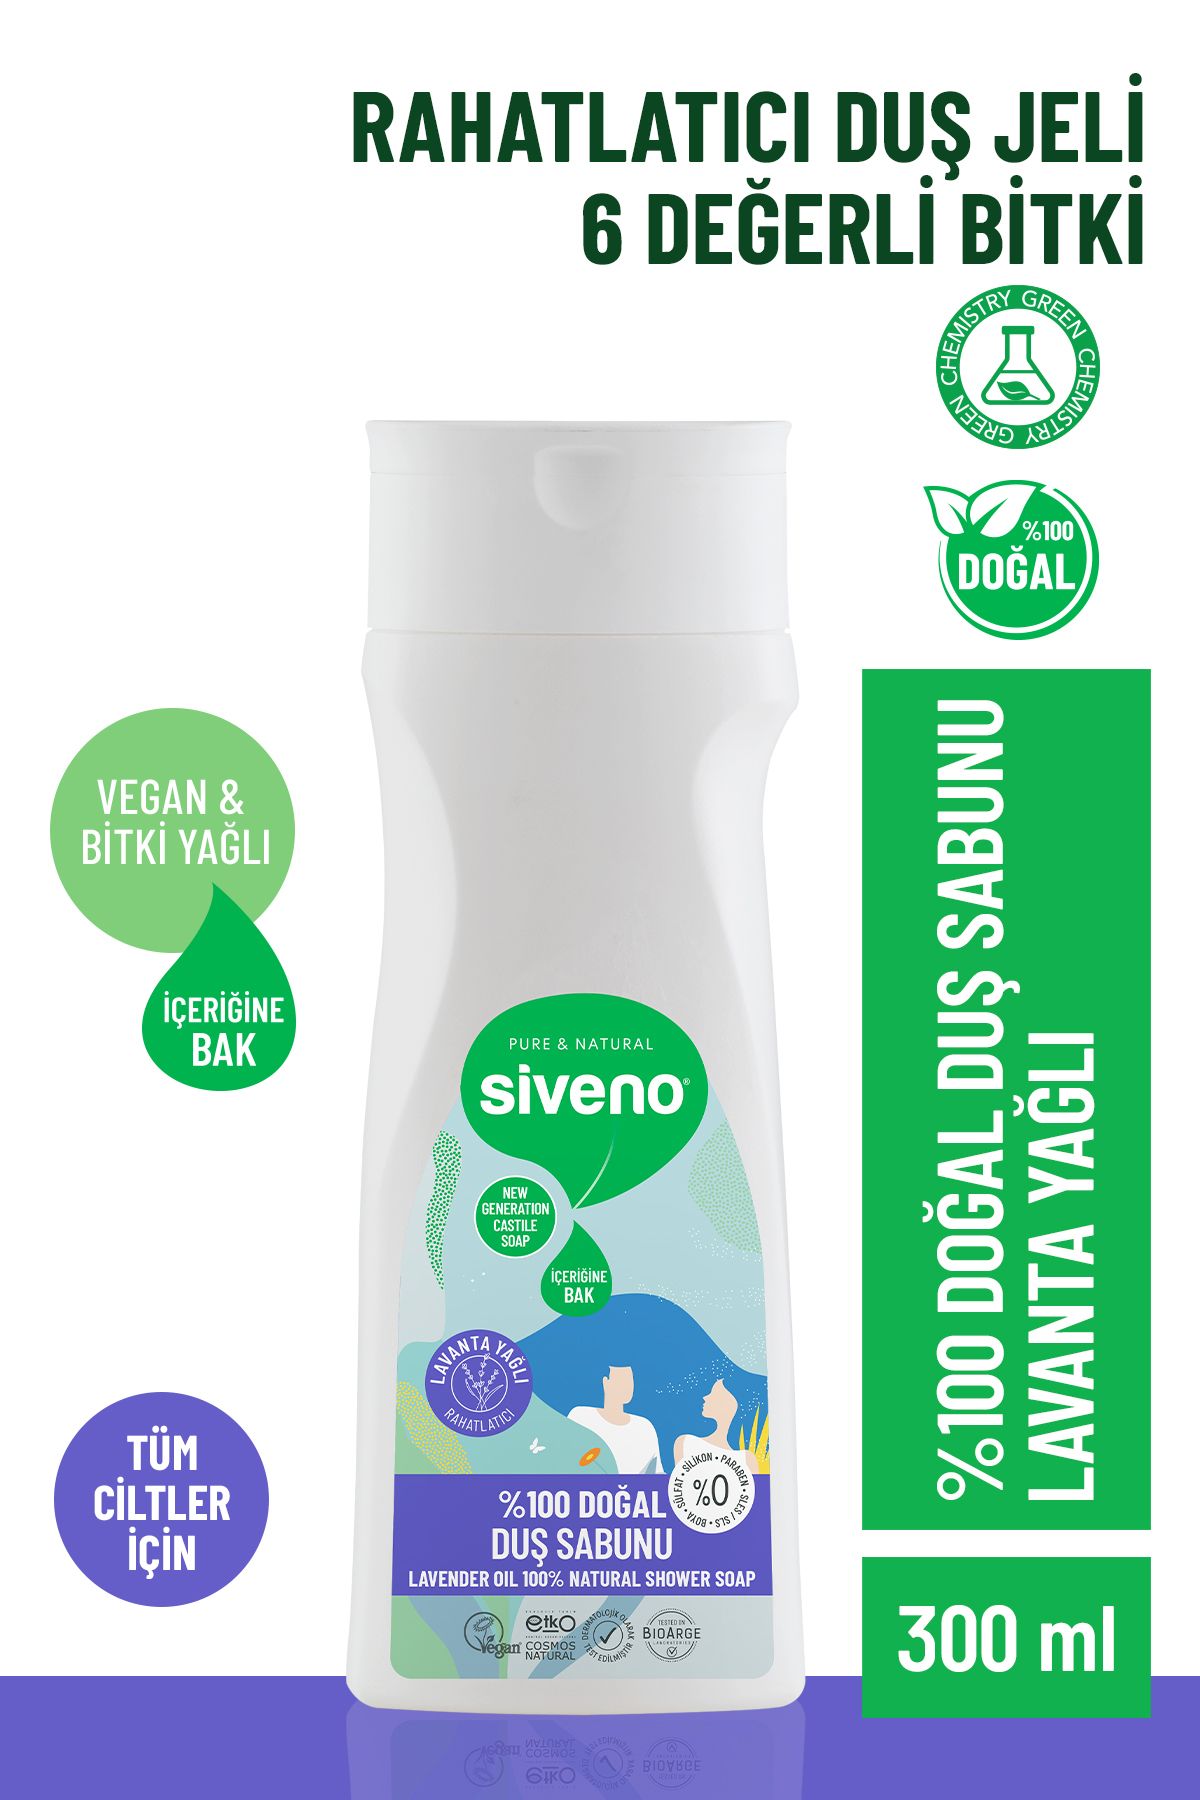 Siveno %100 Doğal Duş Sabunu Lavanta Kokulu Rahatlatıcı Duş Jeli 6 Değerli Bitki Vegan 300 ml